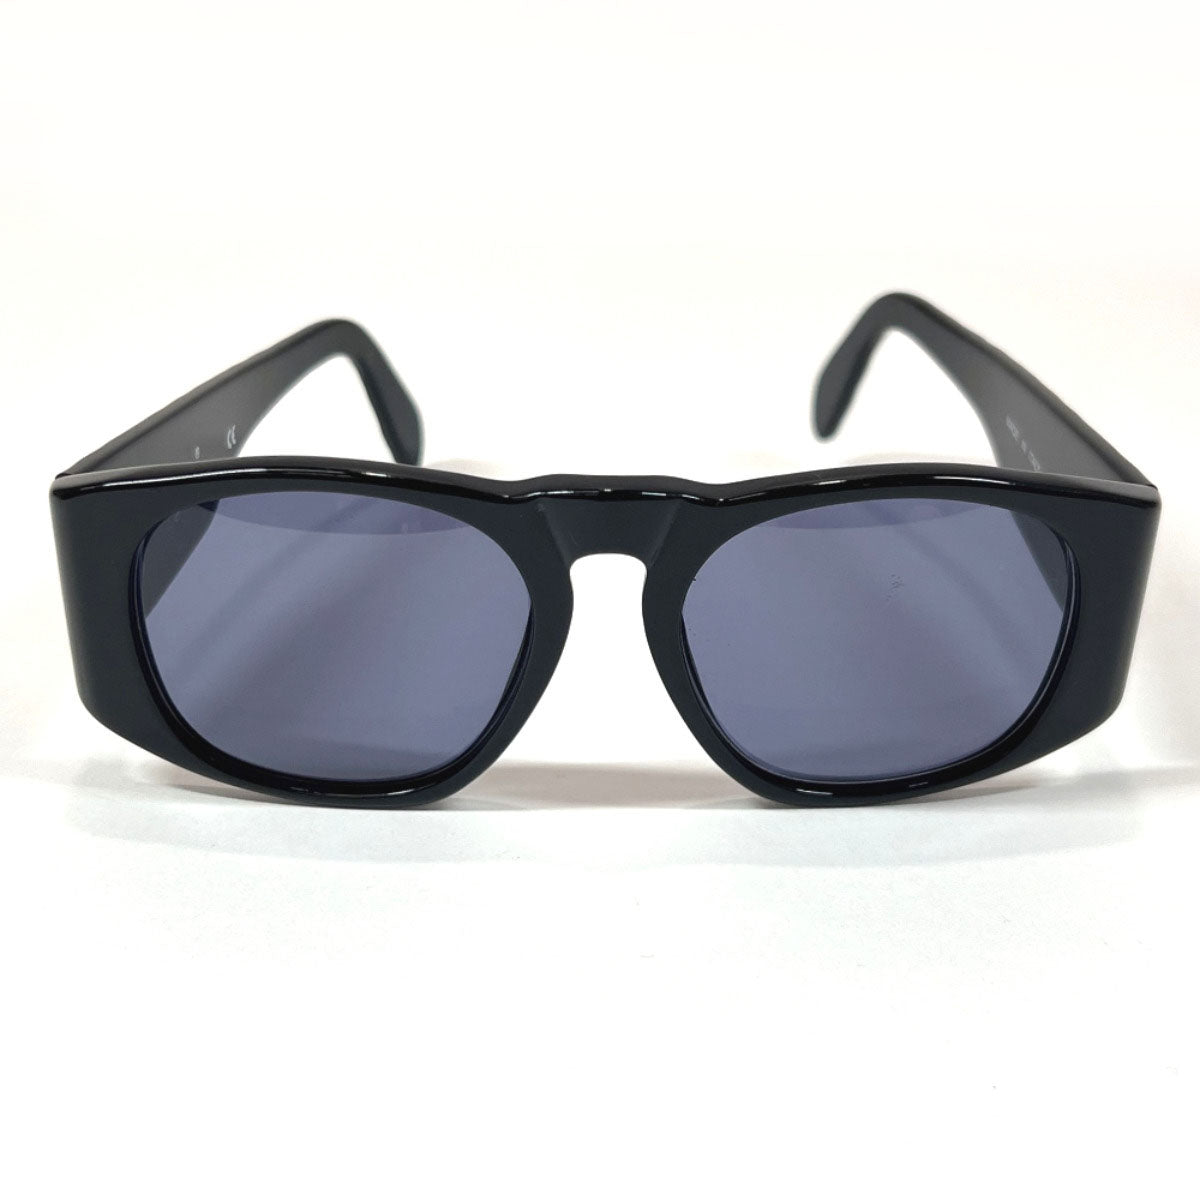 Authentic Black Vintage Chanel Sunglasses 5016